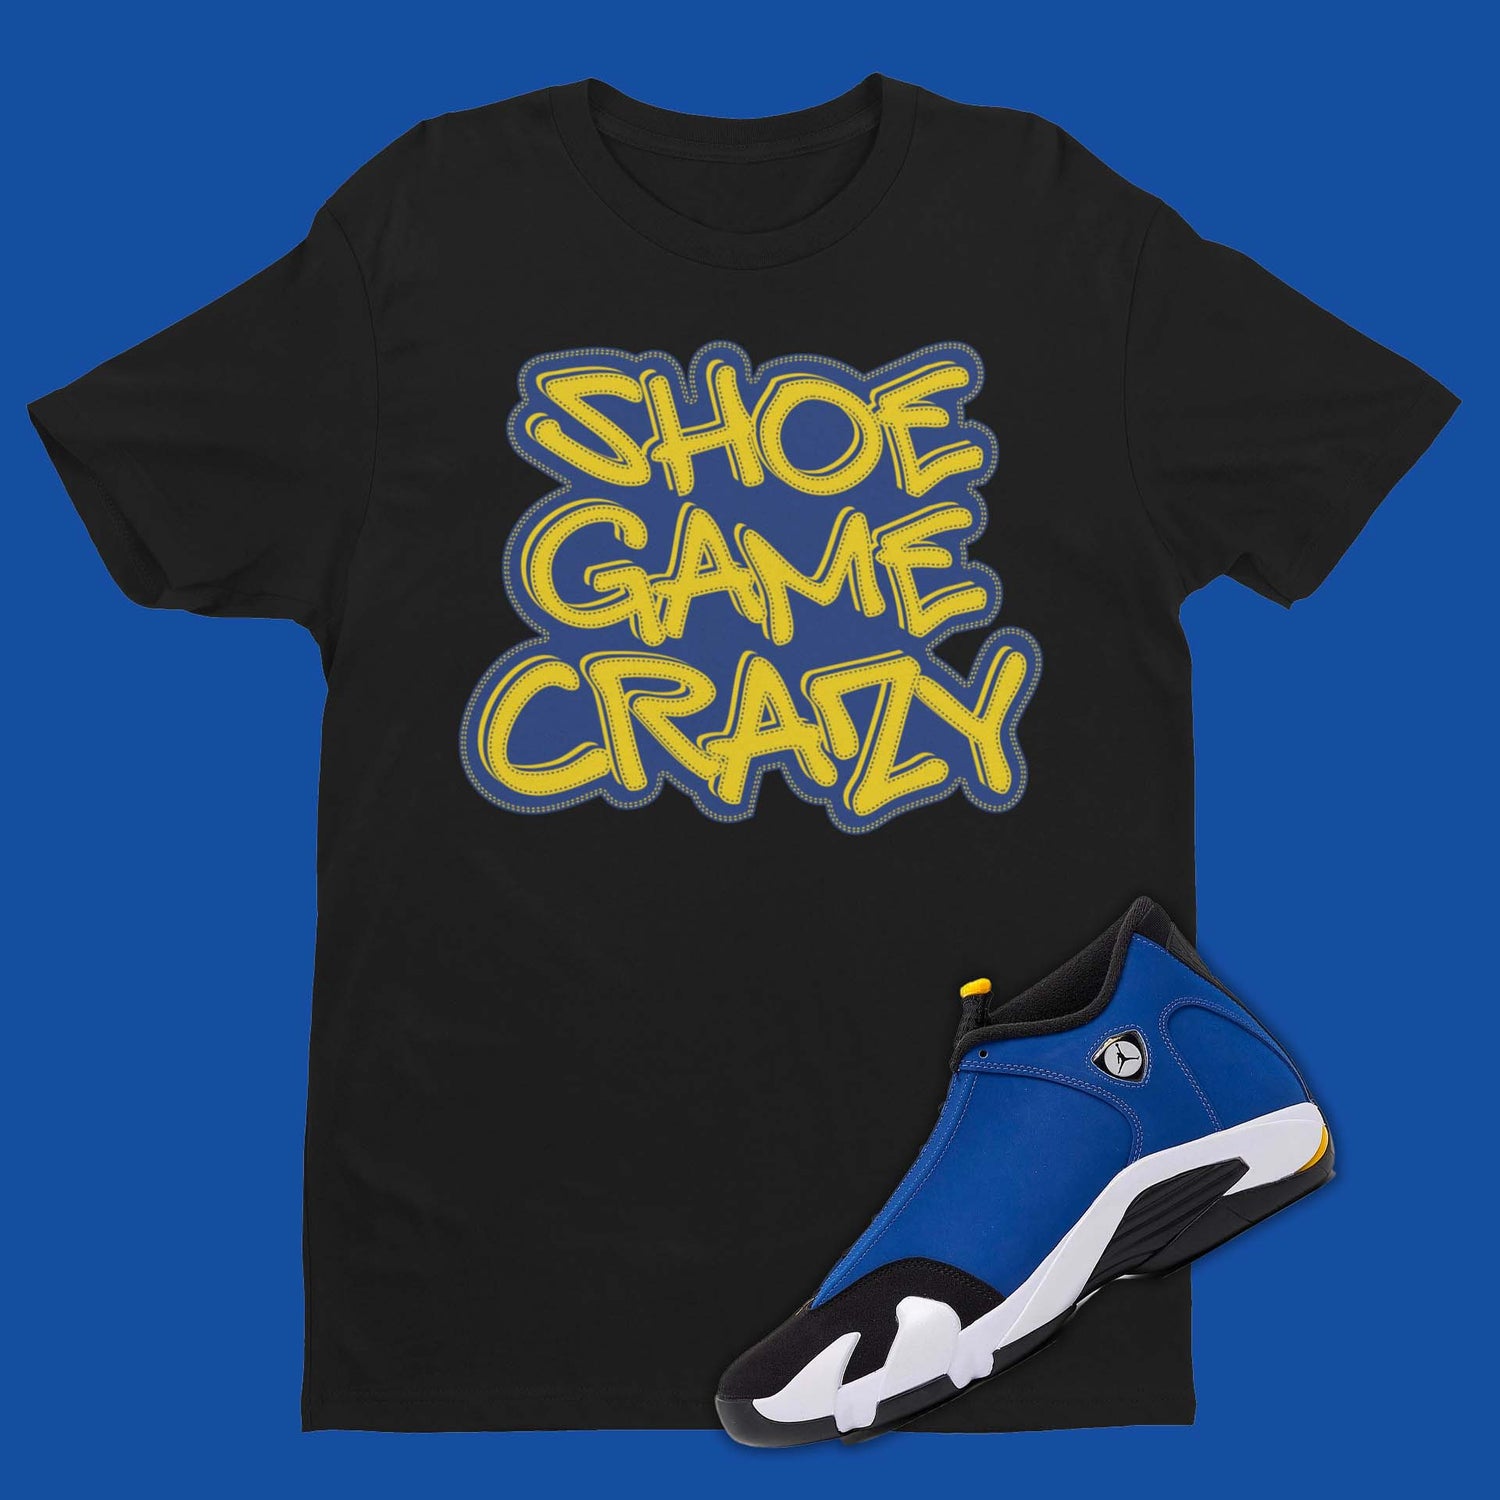 Shoe Game Crazy Shirt Matching Air Jordan 14 Laney in black for sneakerheads.